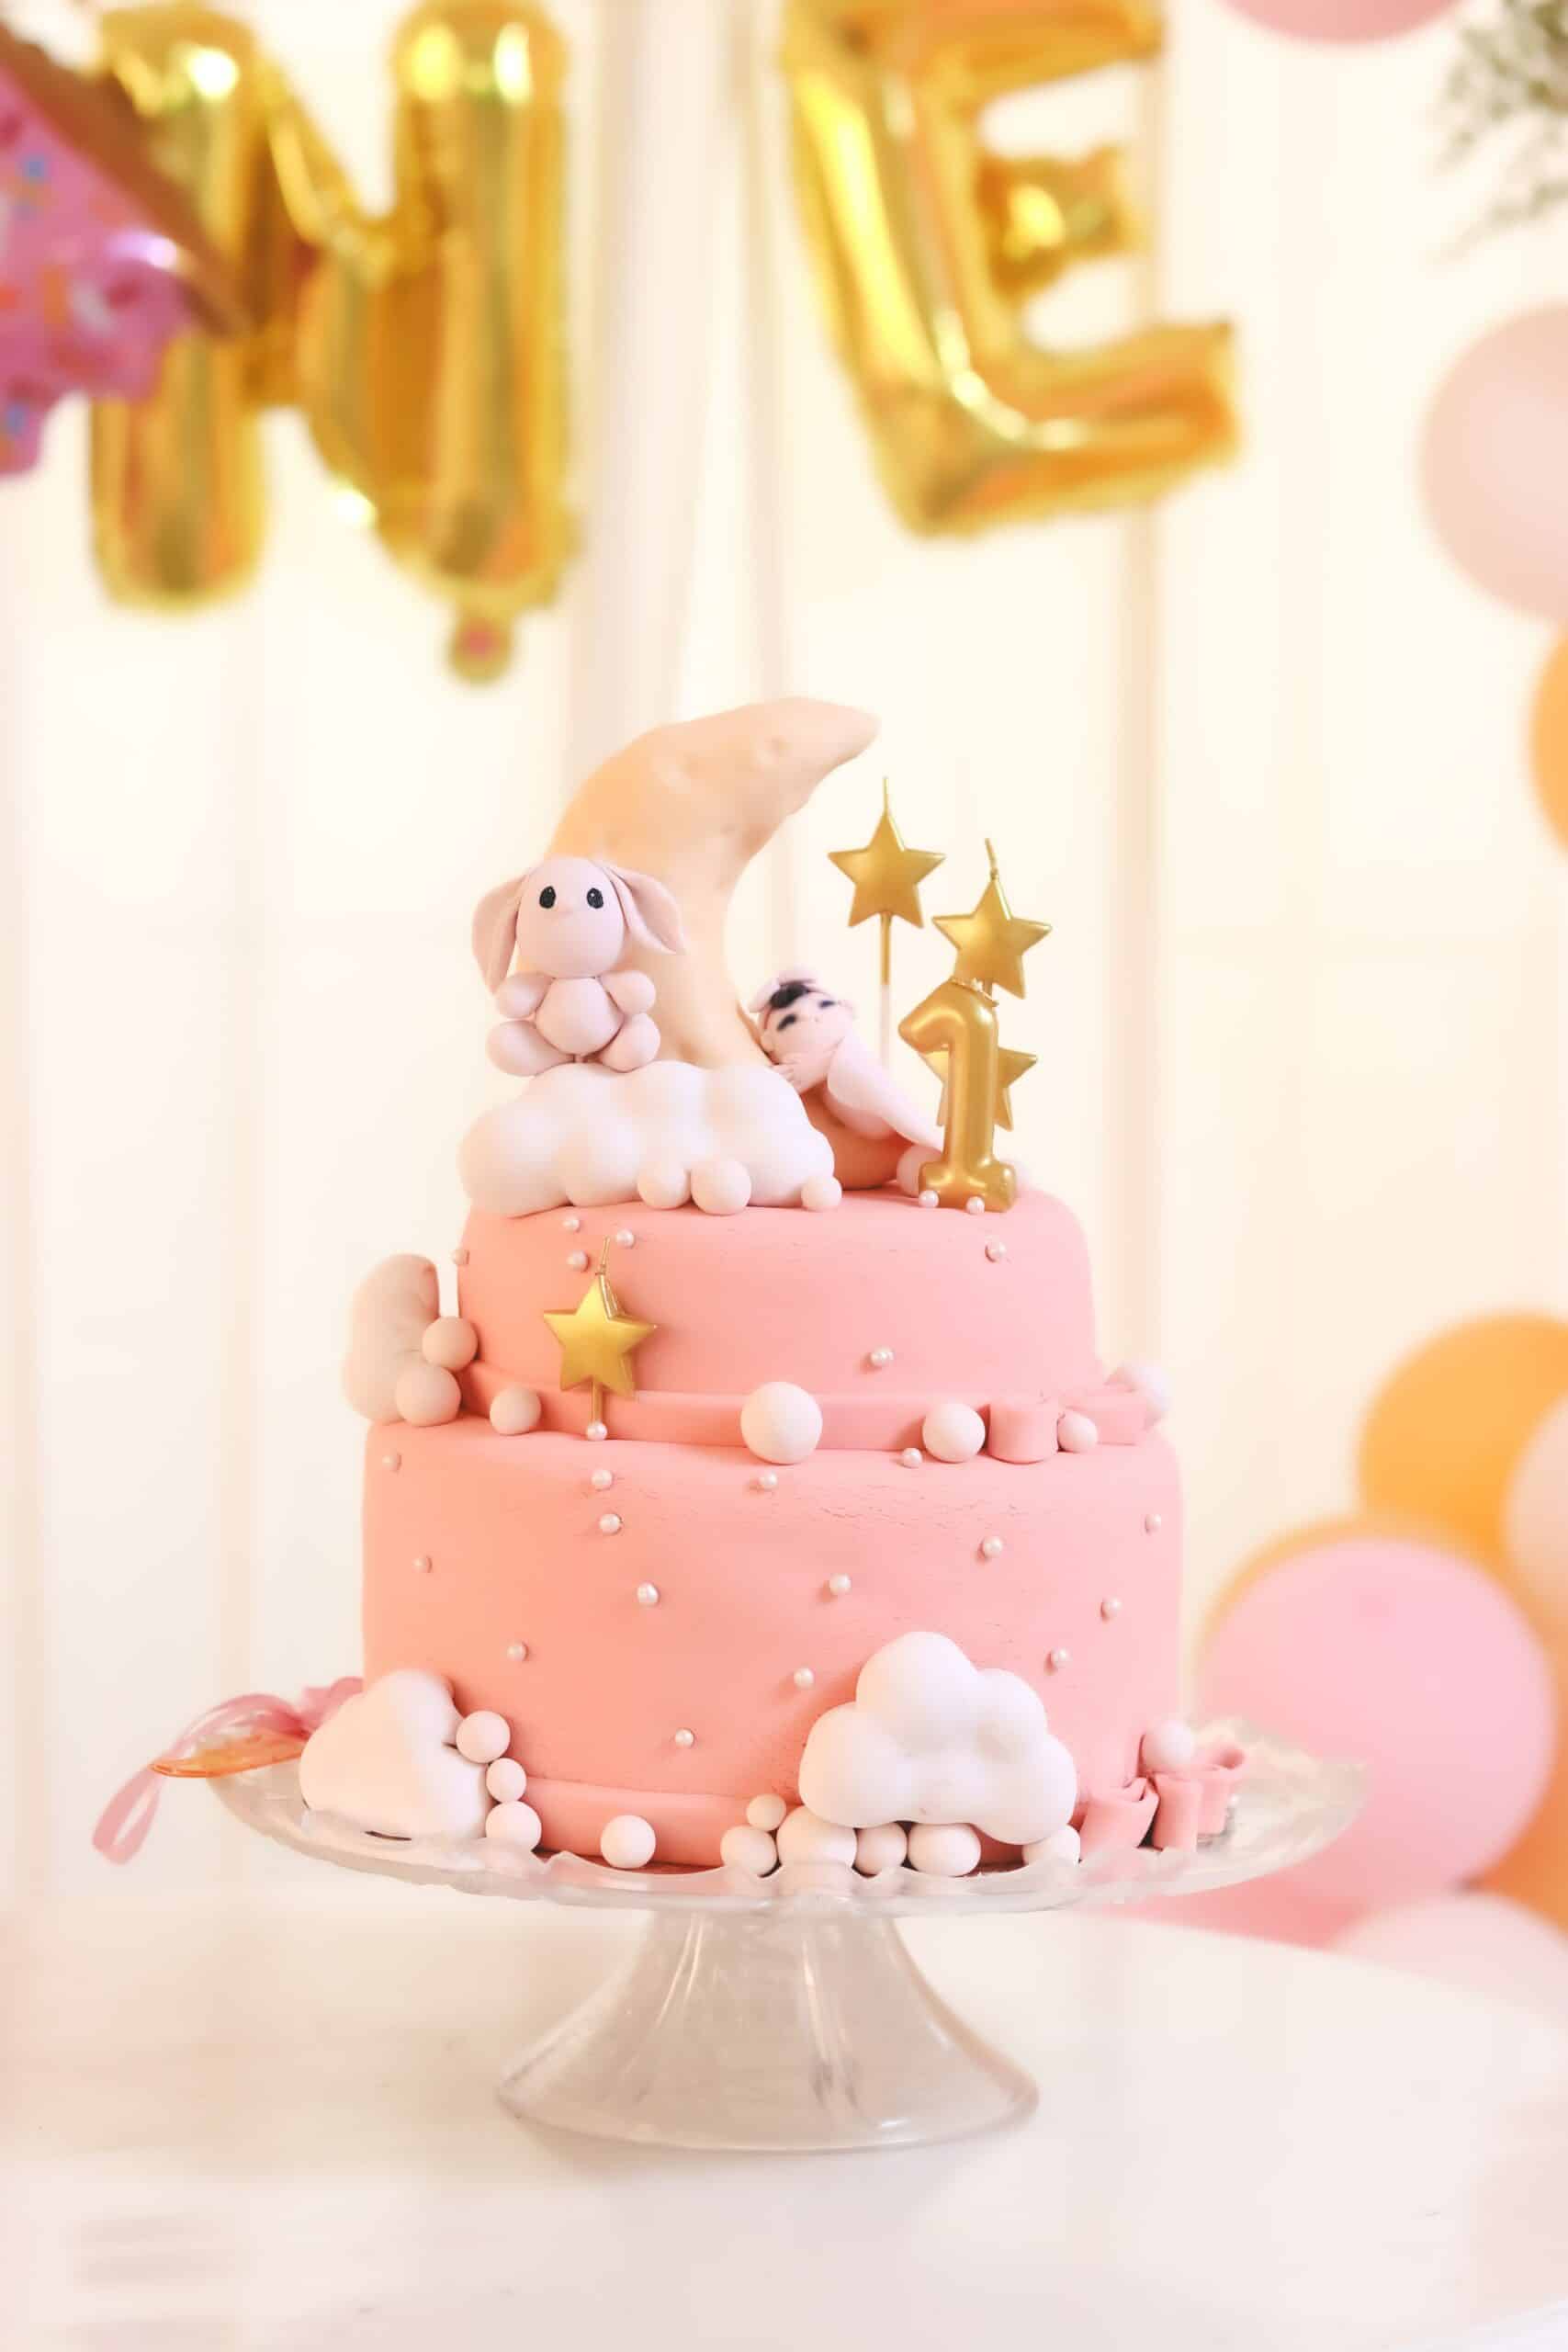 Pour le gâteau d'anniversaire des 1 an de bébé, on évite de mettre du sucre ajouté car ce n'est pas bon pour son organisme !